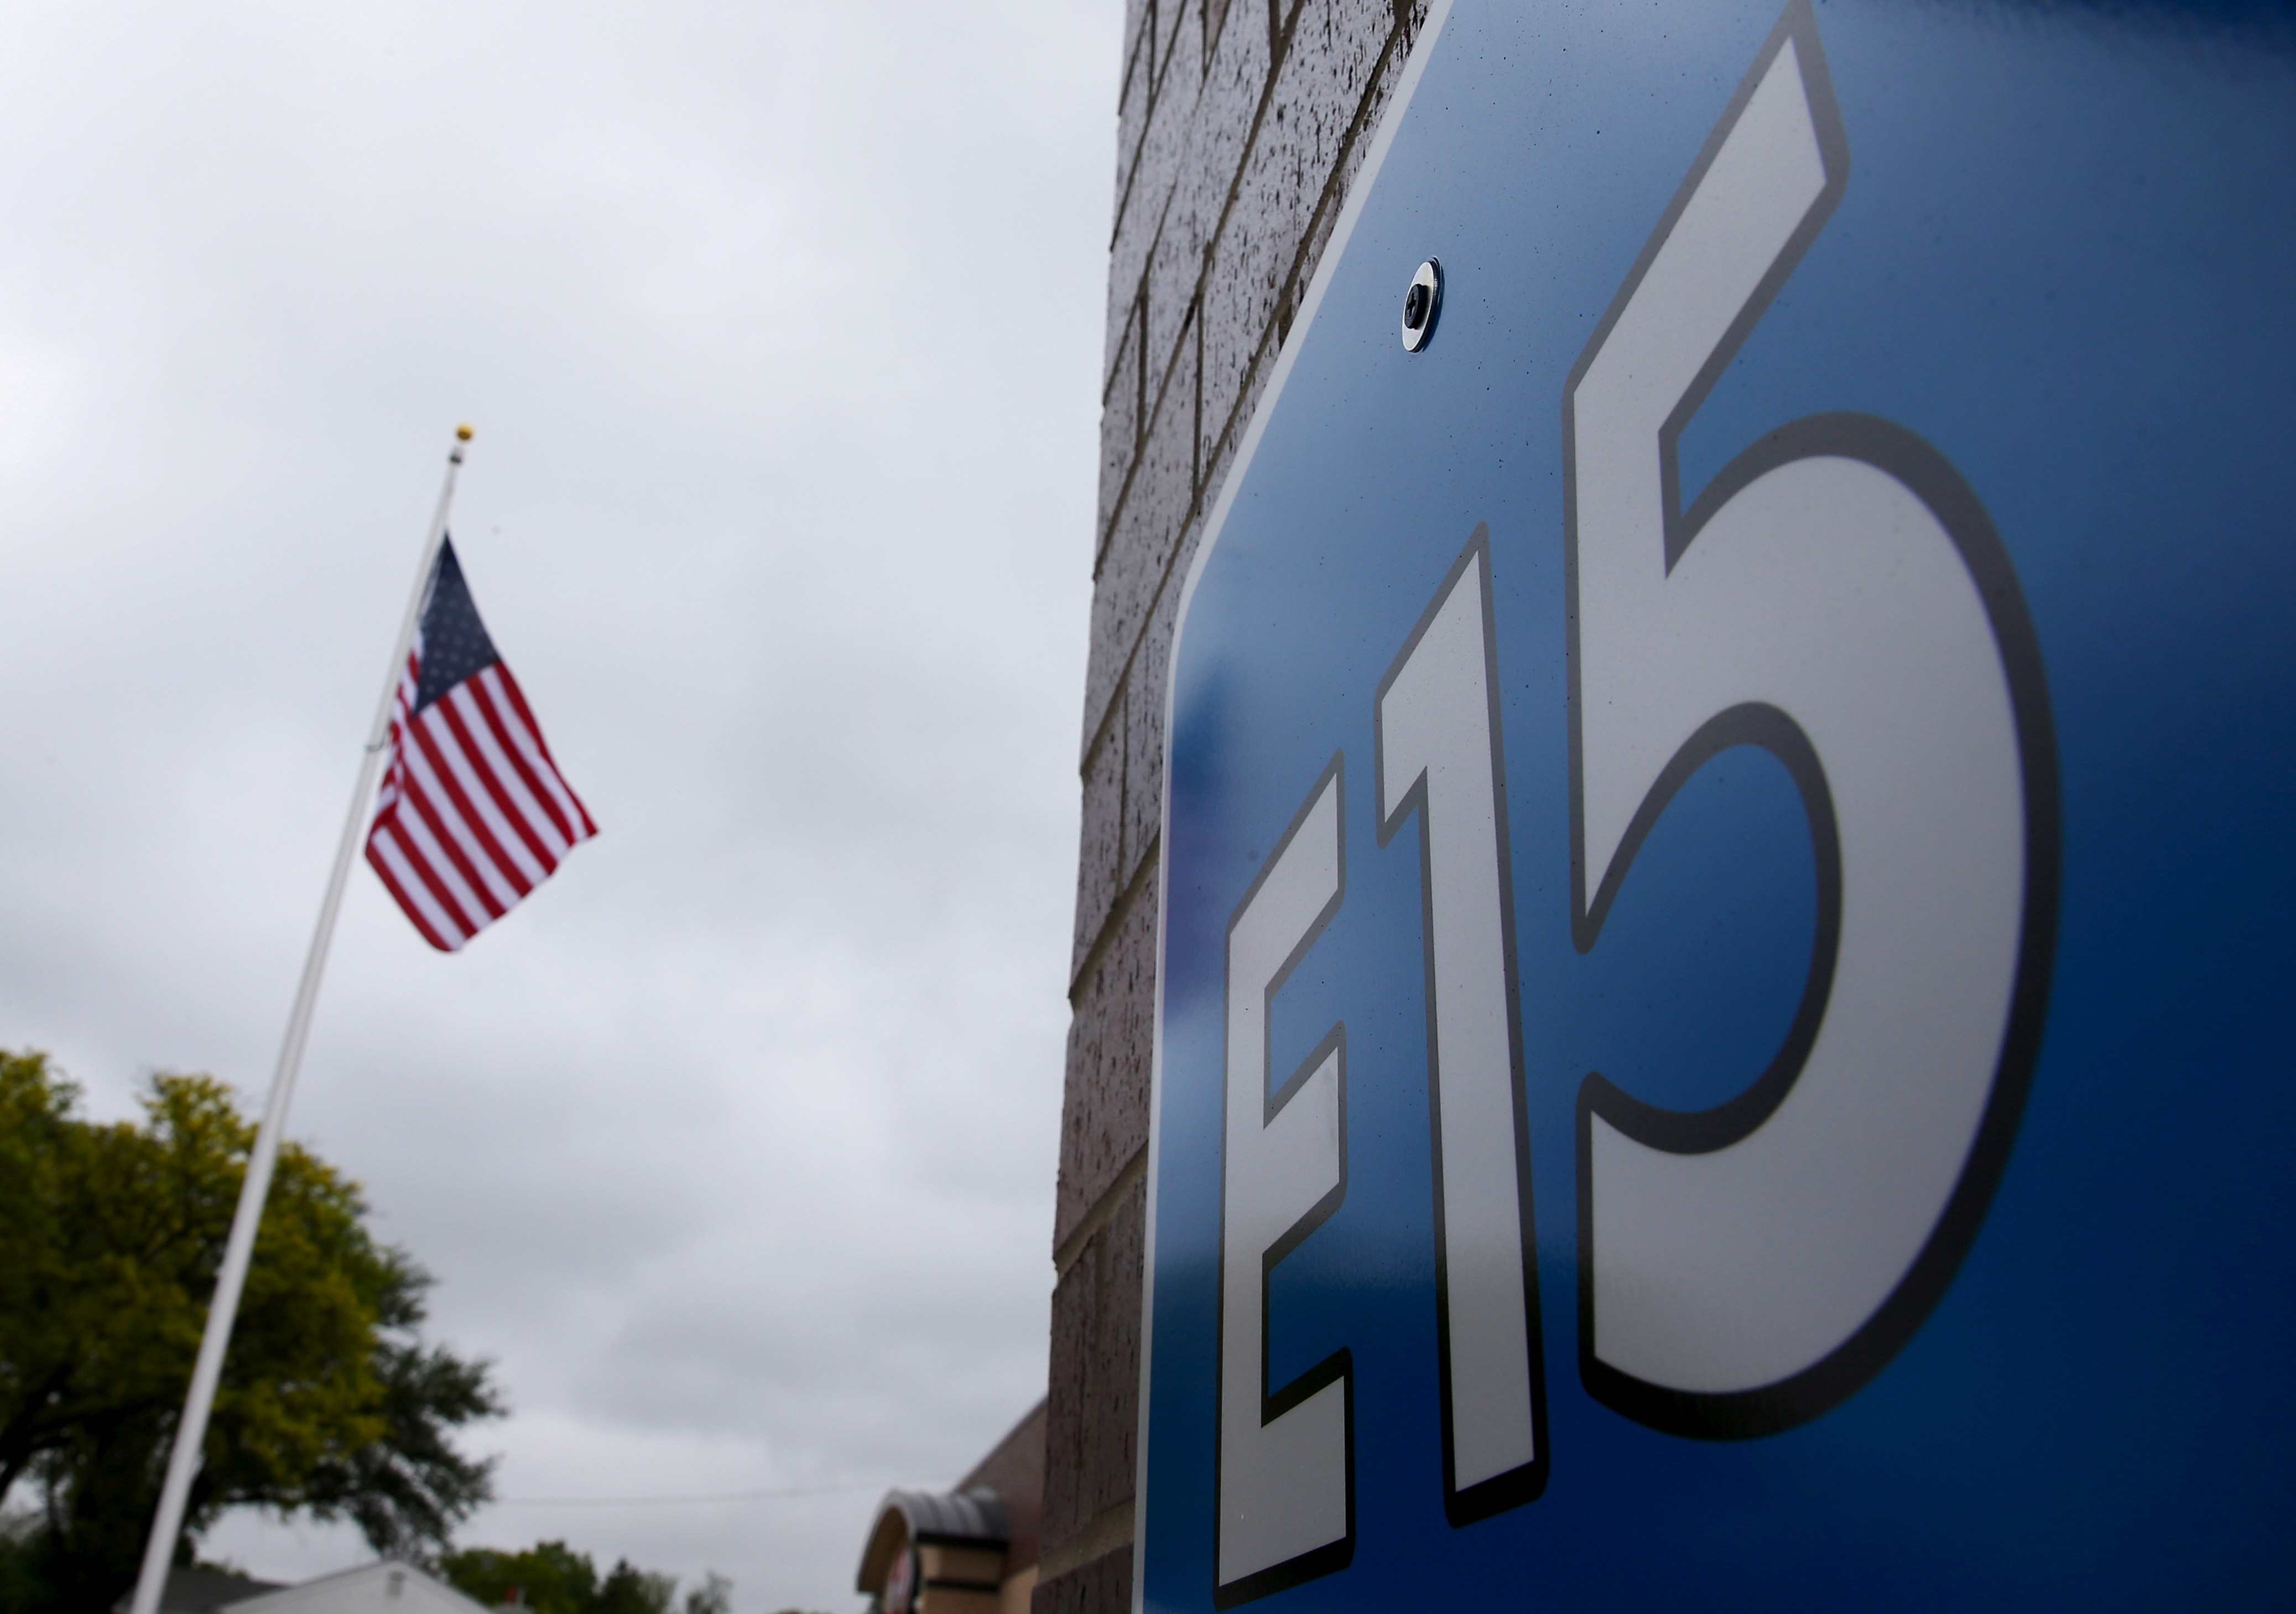 FOTO DE ARCHIVO: Un cartel que anuncia el E15, una gasolina con 15% de etanol, se ve en una gasolinera en Clive, Iowa, Estados Unidos, 17 de mayo de 2015. REUTERS/Jim Young